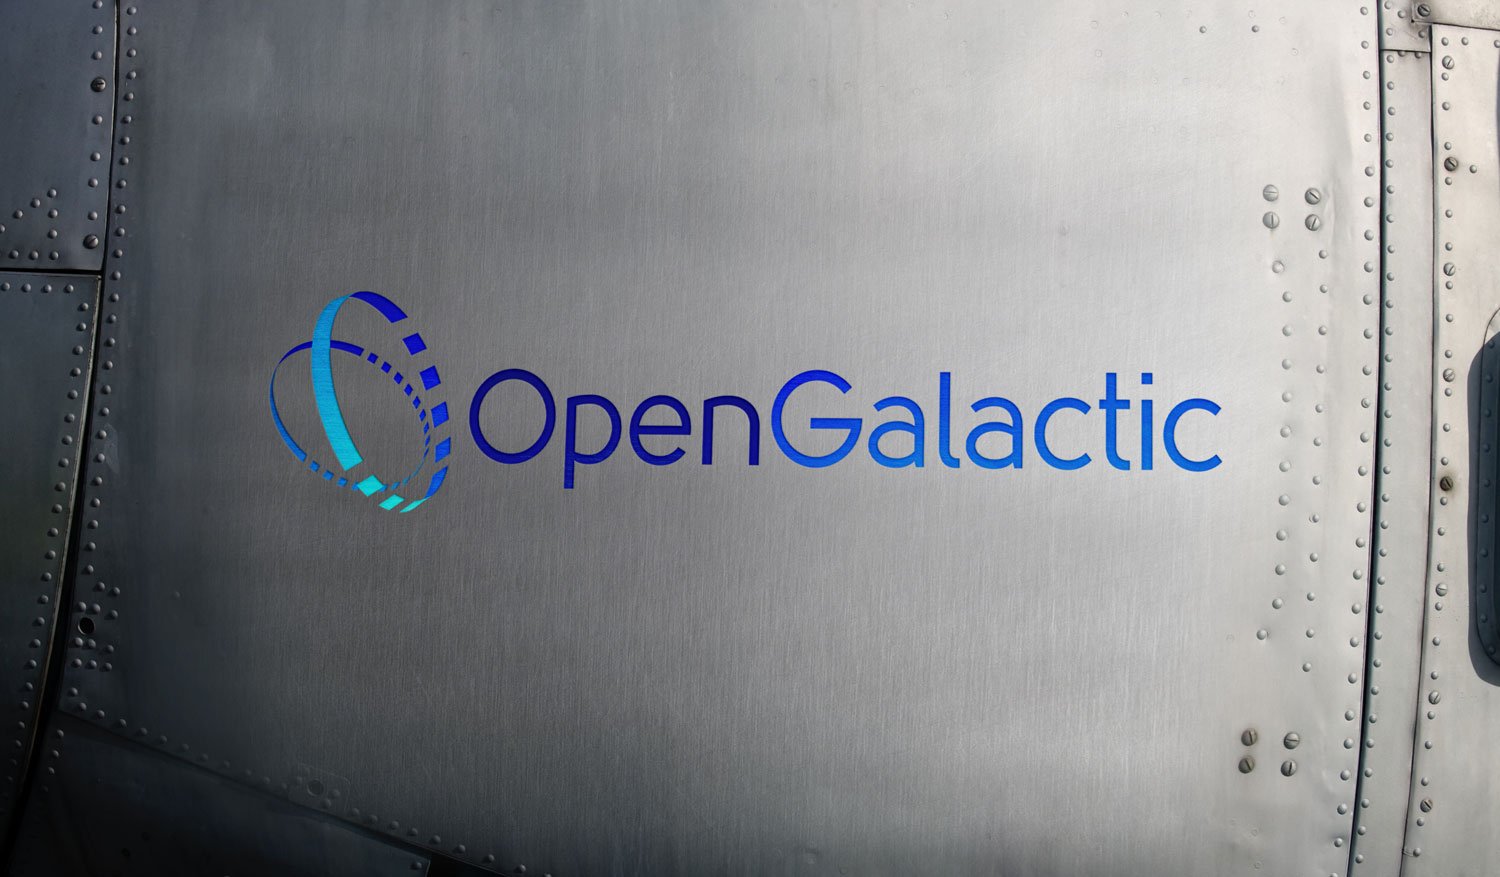 Award winning designed logo for Open Galactic shown on side of satelite